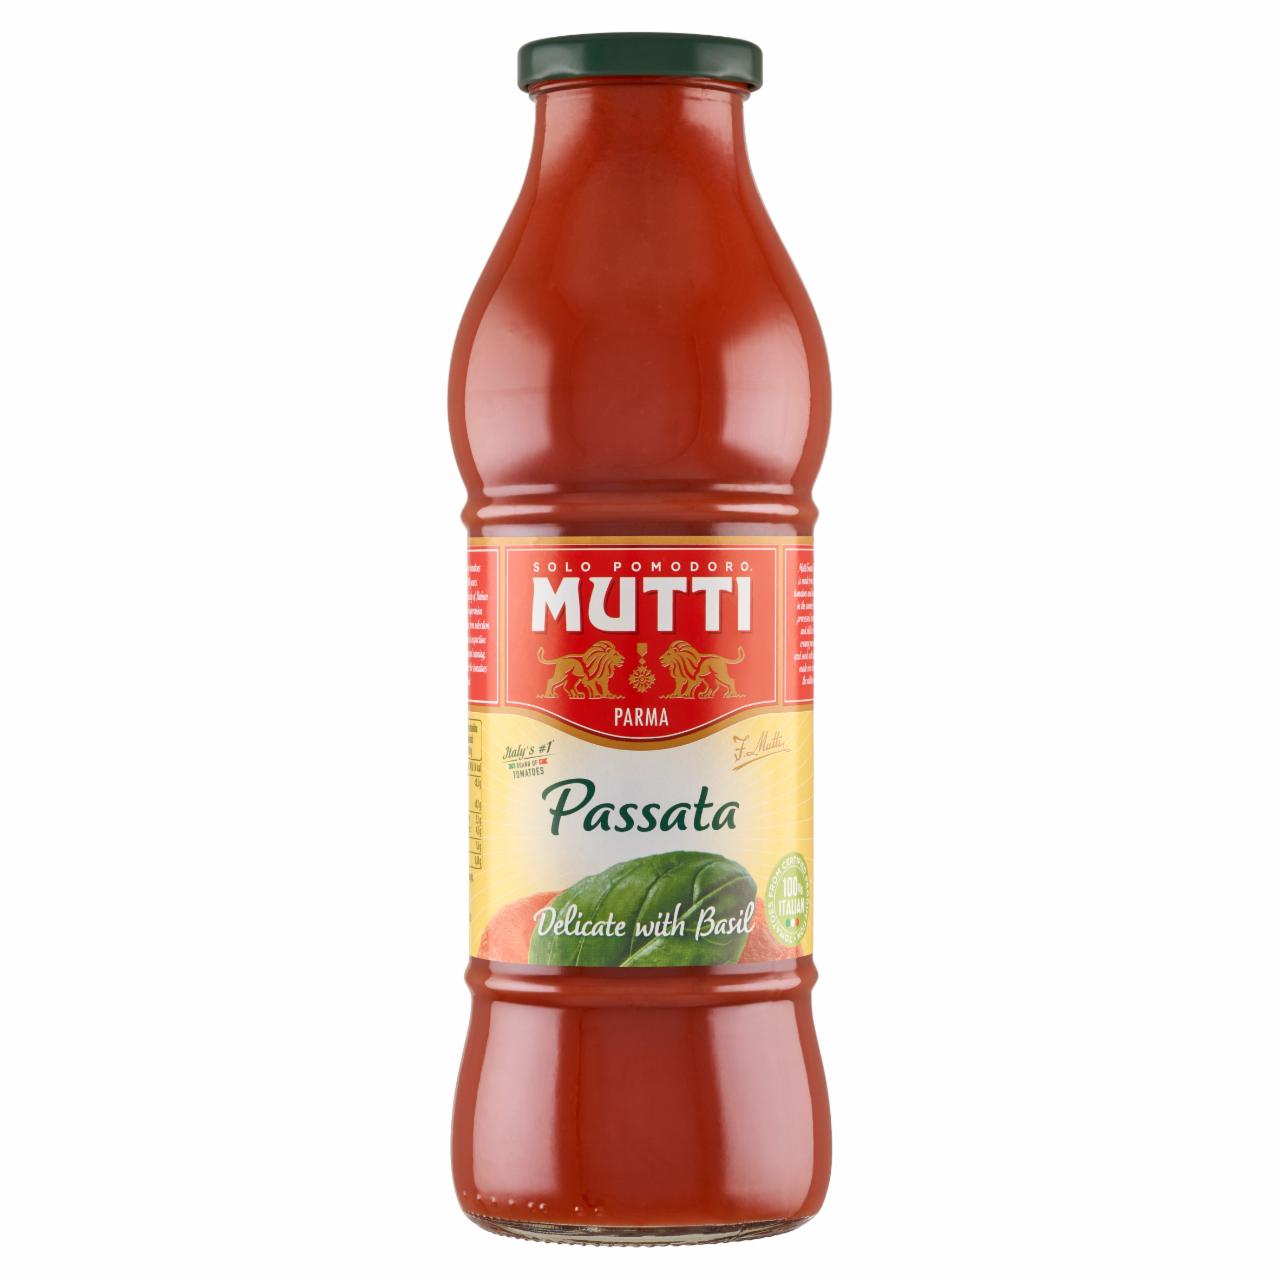 Zdjęcia - Mutti Passata przecier pomidorowy z bazylią 700 g